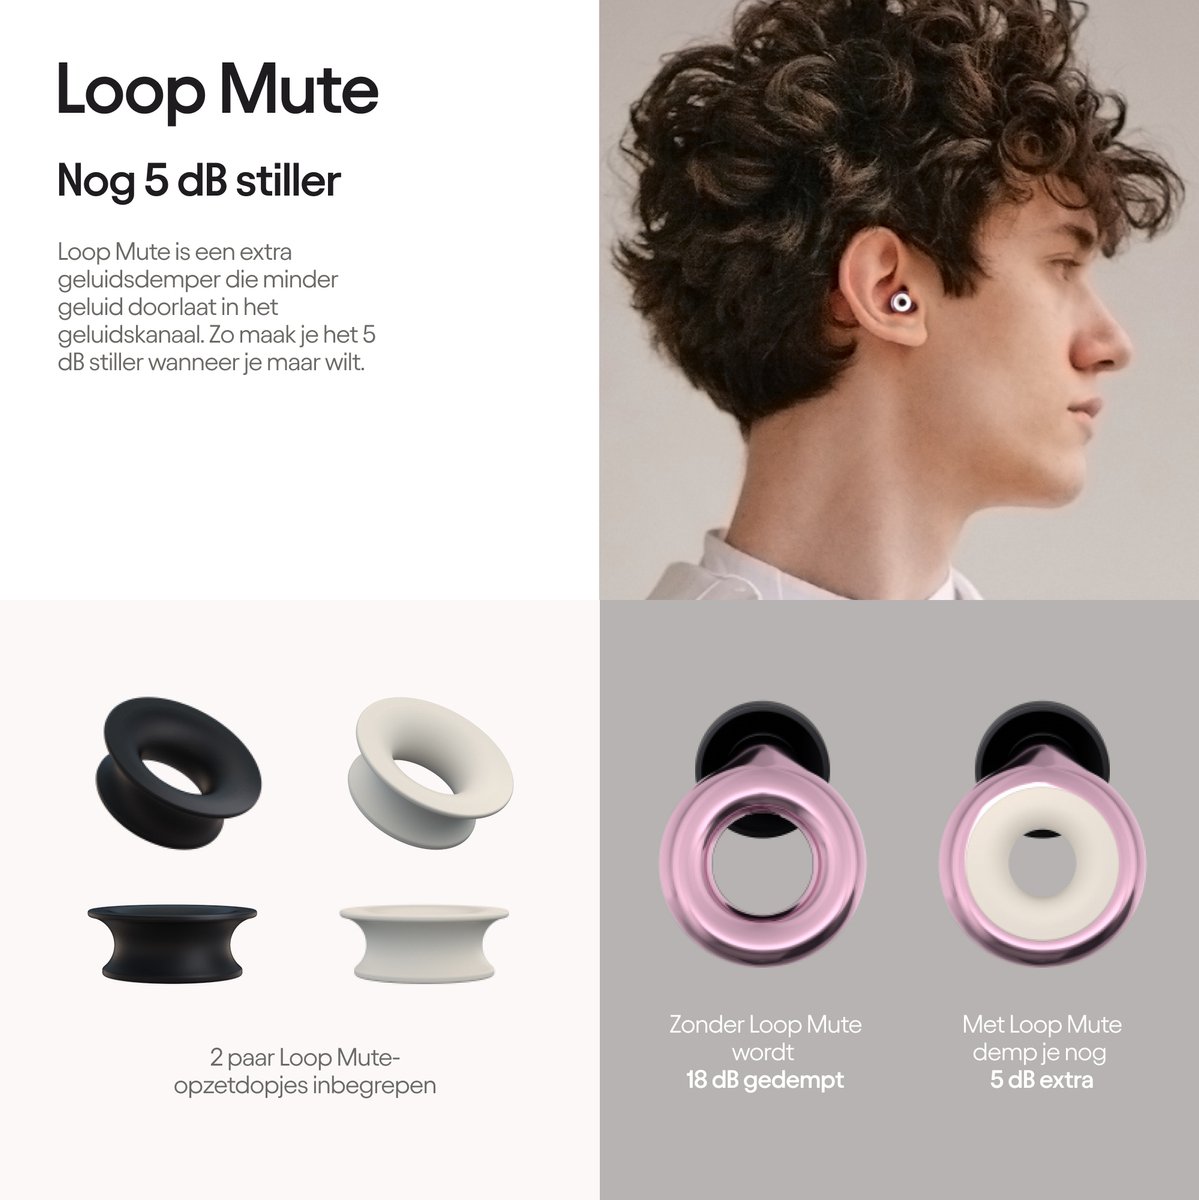 Loop Earplugs Experience Pro - bouchons d'oreille premium pour protection  auditive